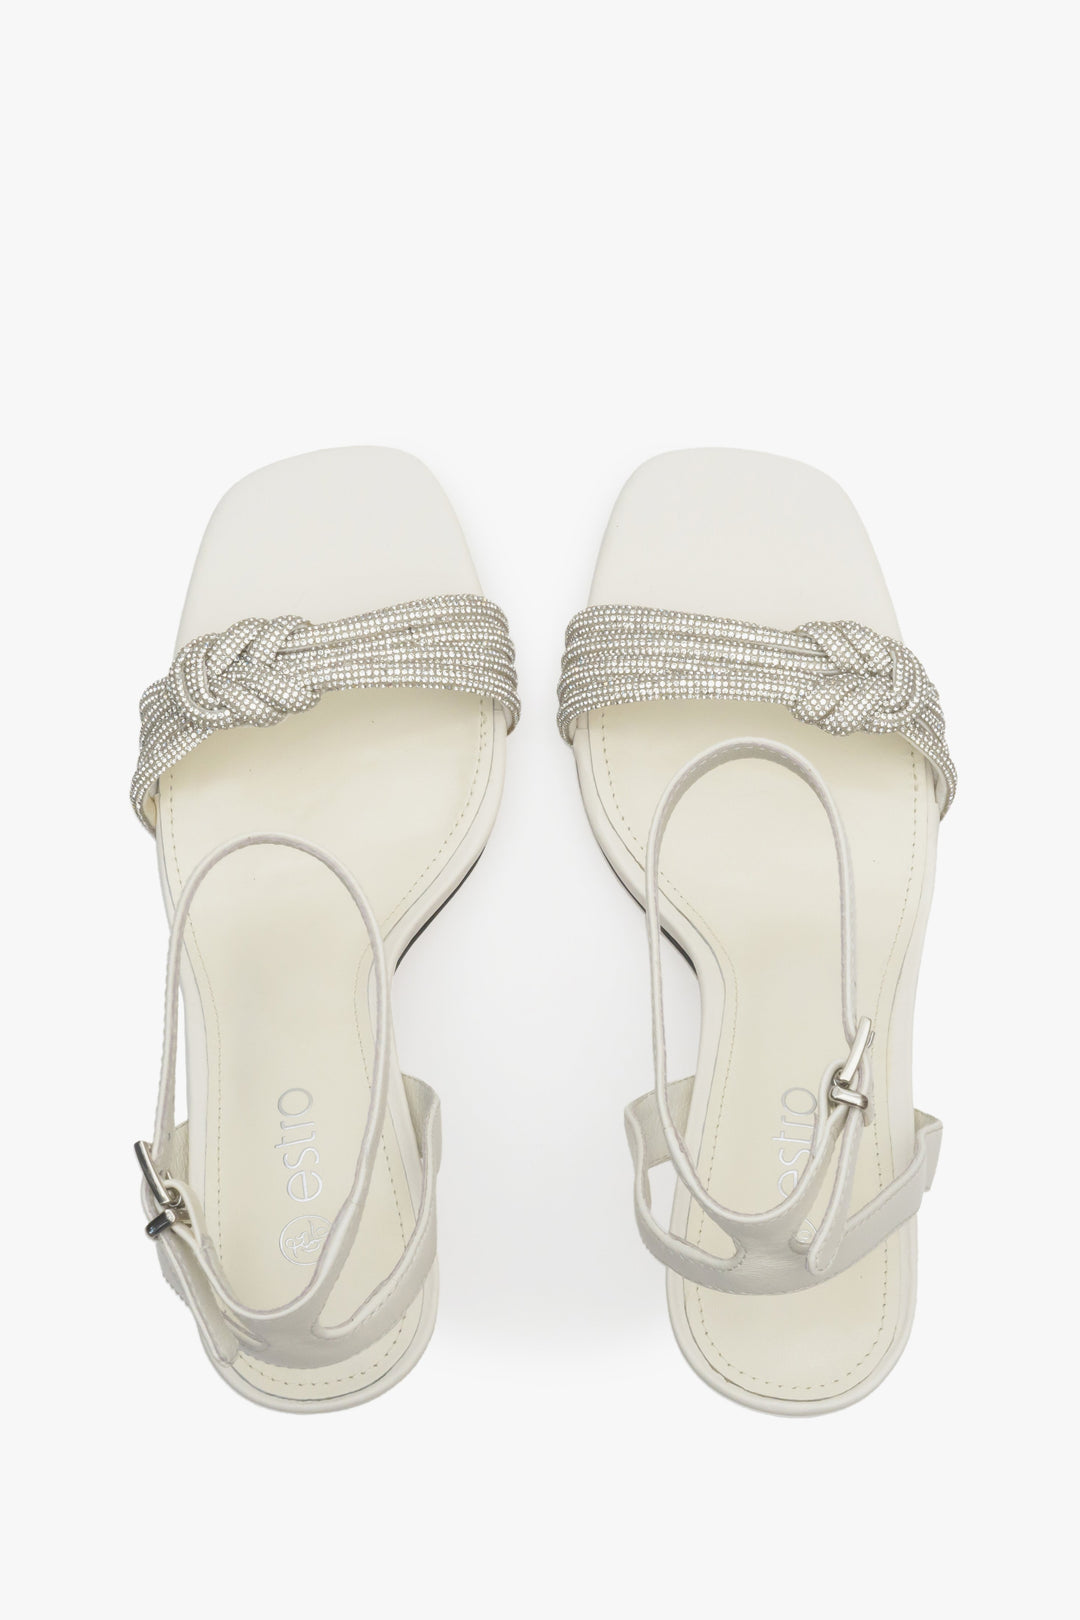 Women's light beige stiletto heel sandals - presentation form above.